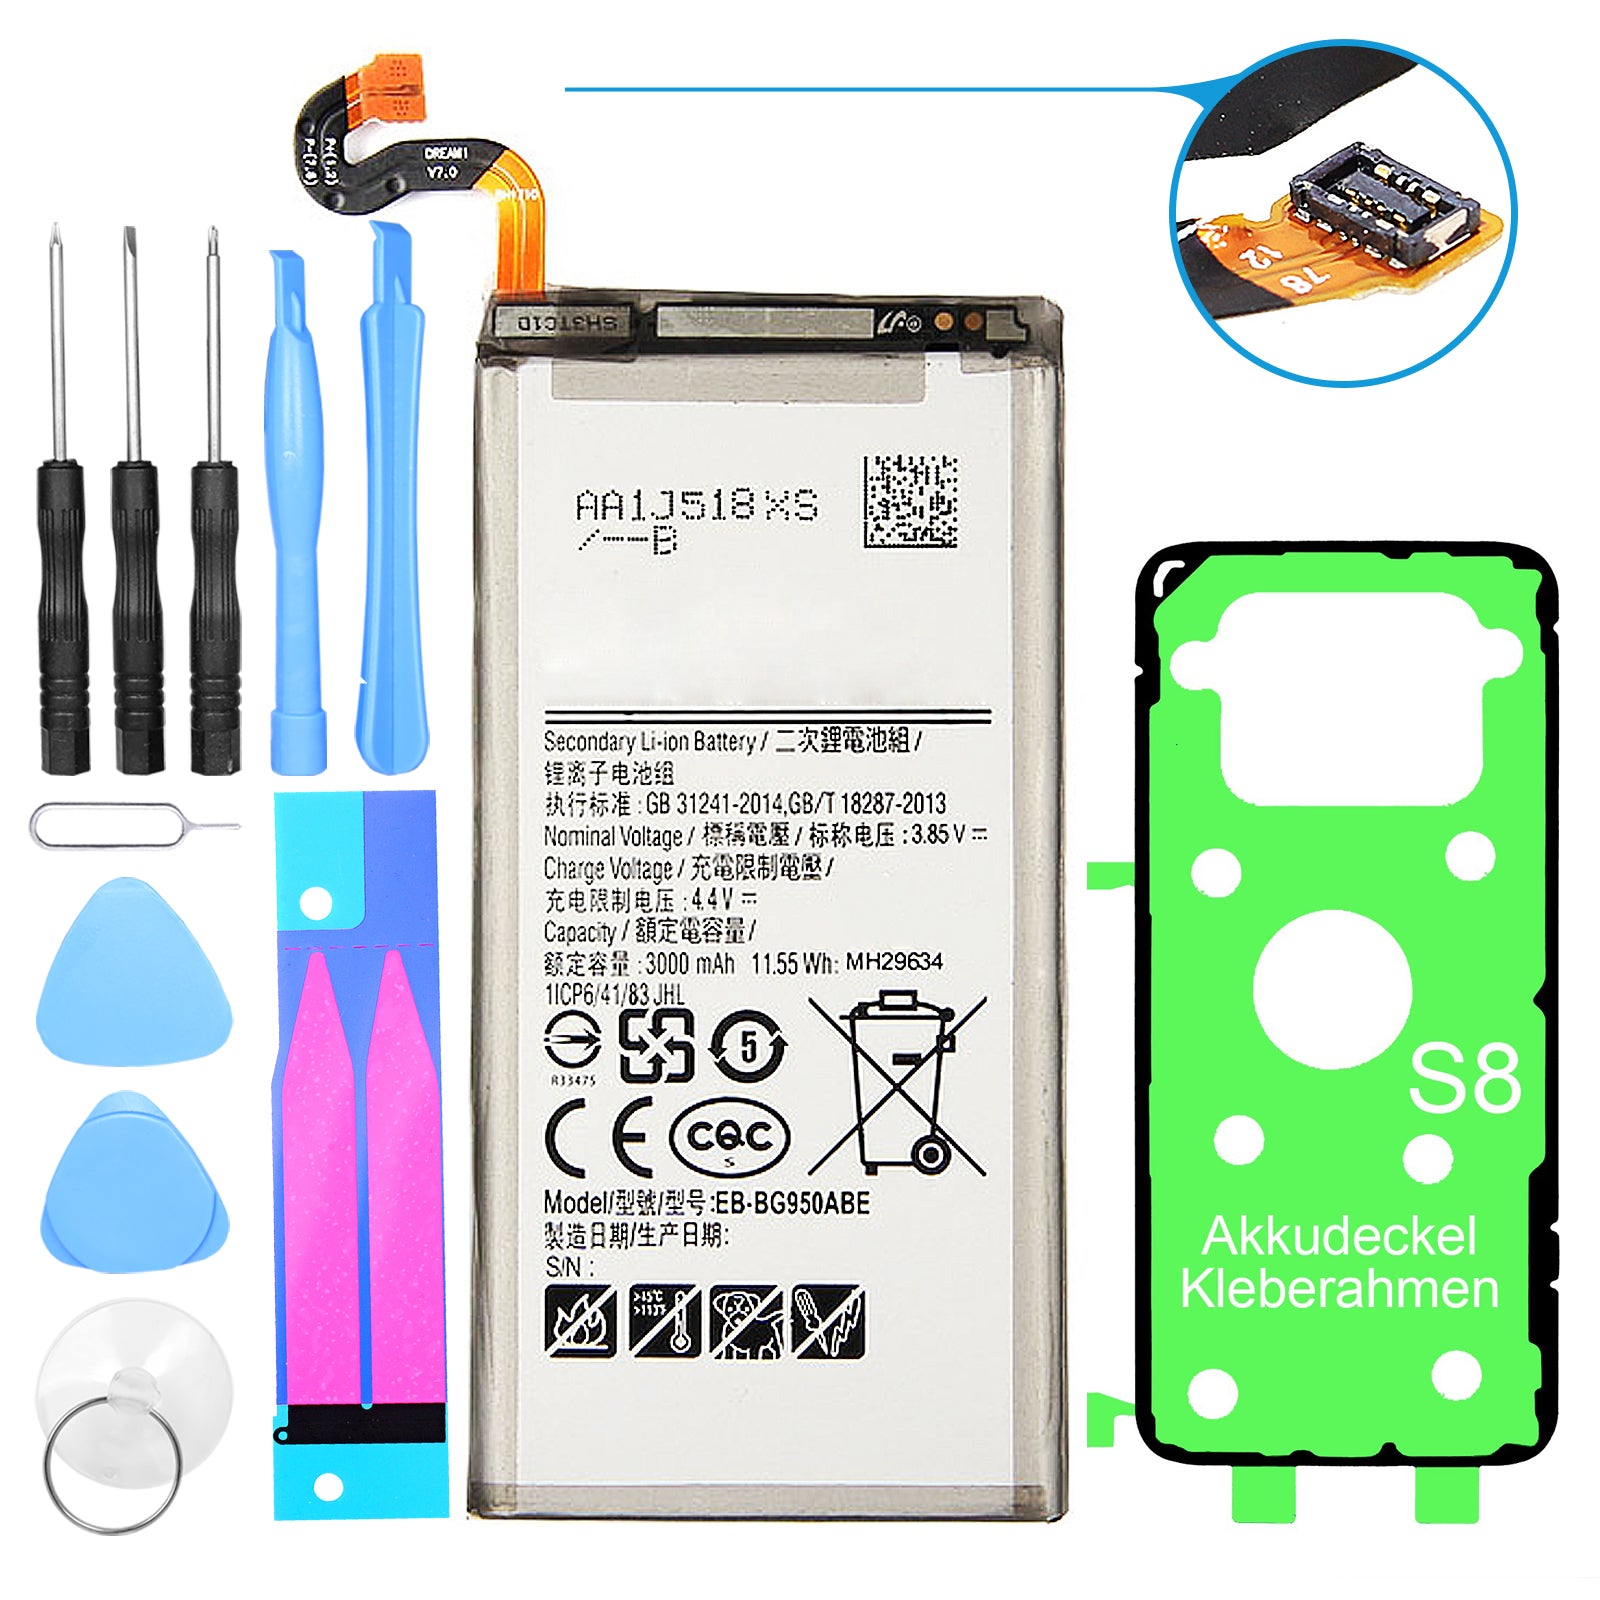 Hochwertiger Ersatzakku für Samsung Galaxy S8 SM-G950. Ersetzt den Akku EB-BG950ABE. Inklusive Werkzeug-Set und Kleberahmen.